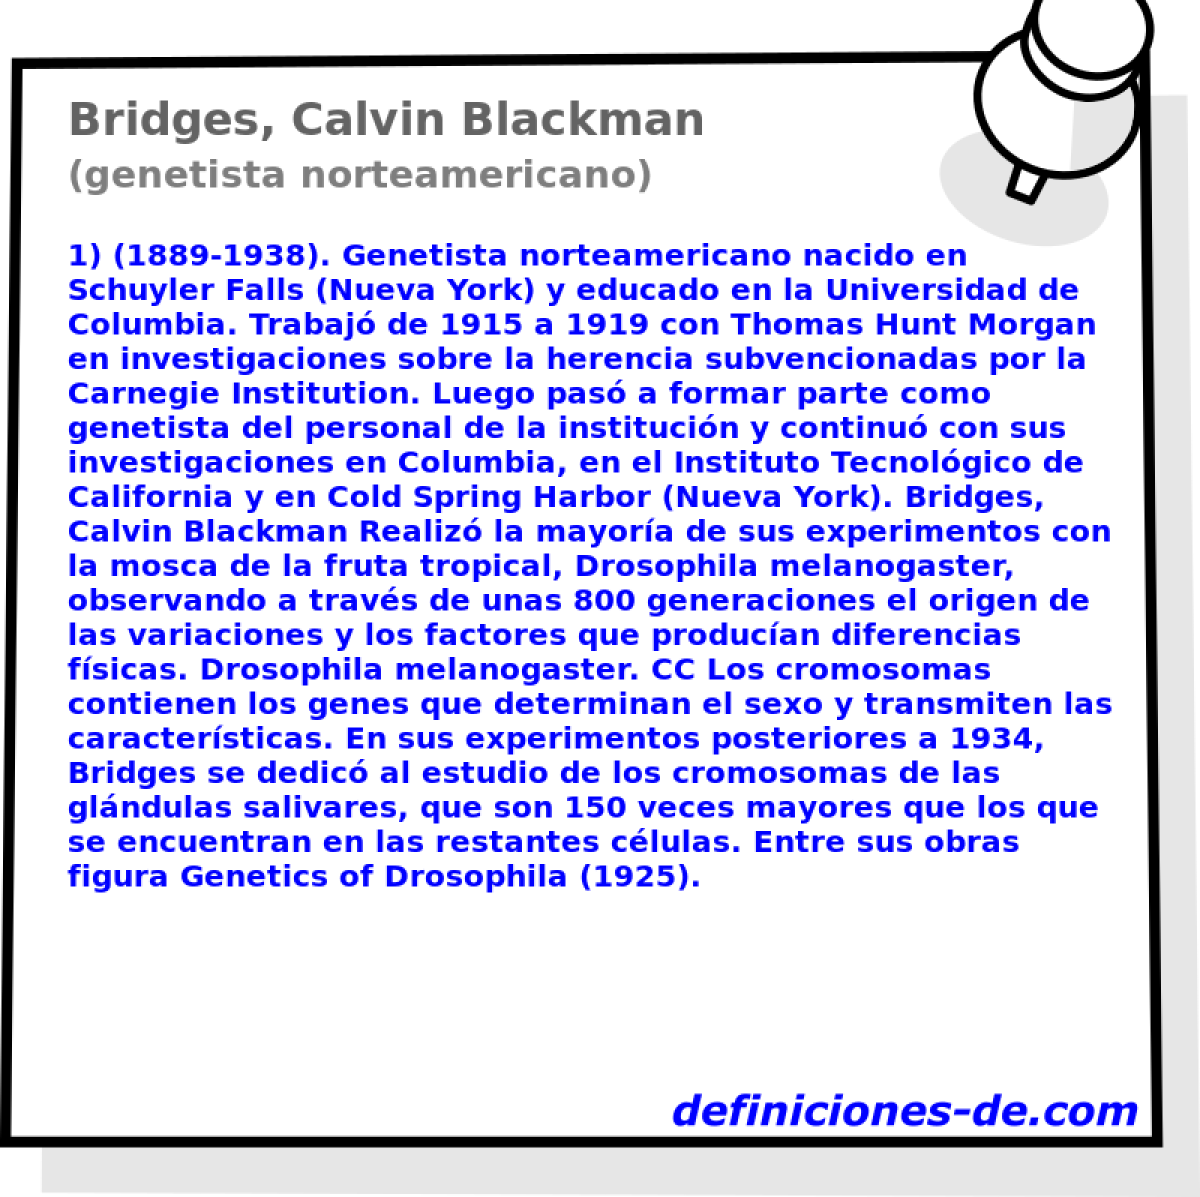 Bridges, Calvin Blackman (genetista norteamericano)